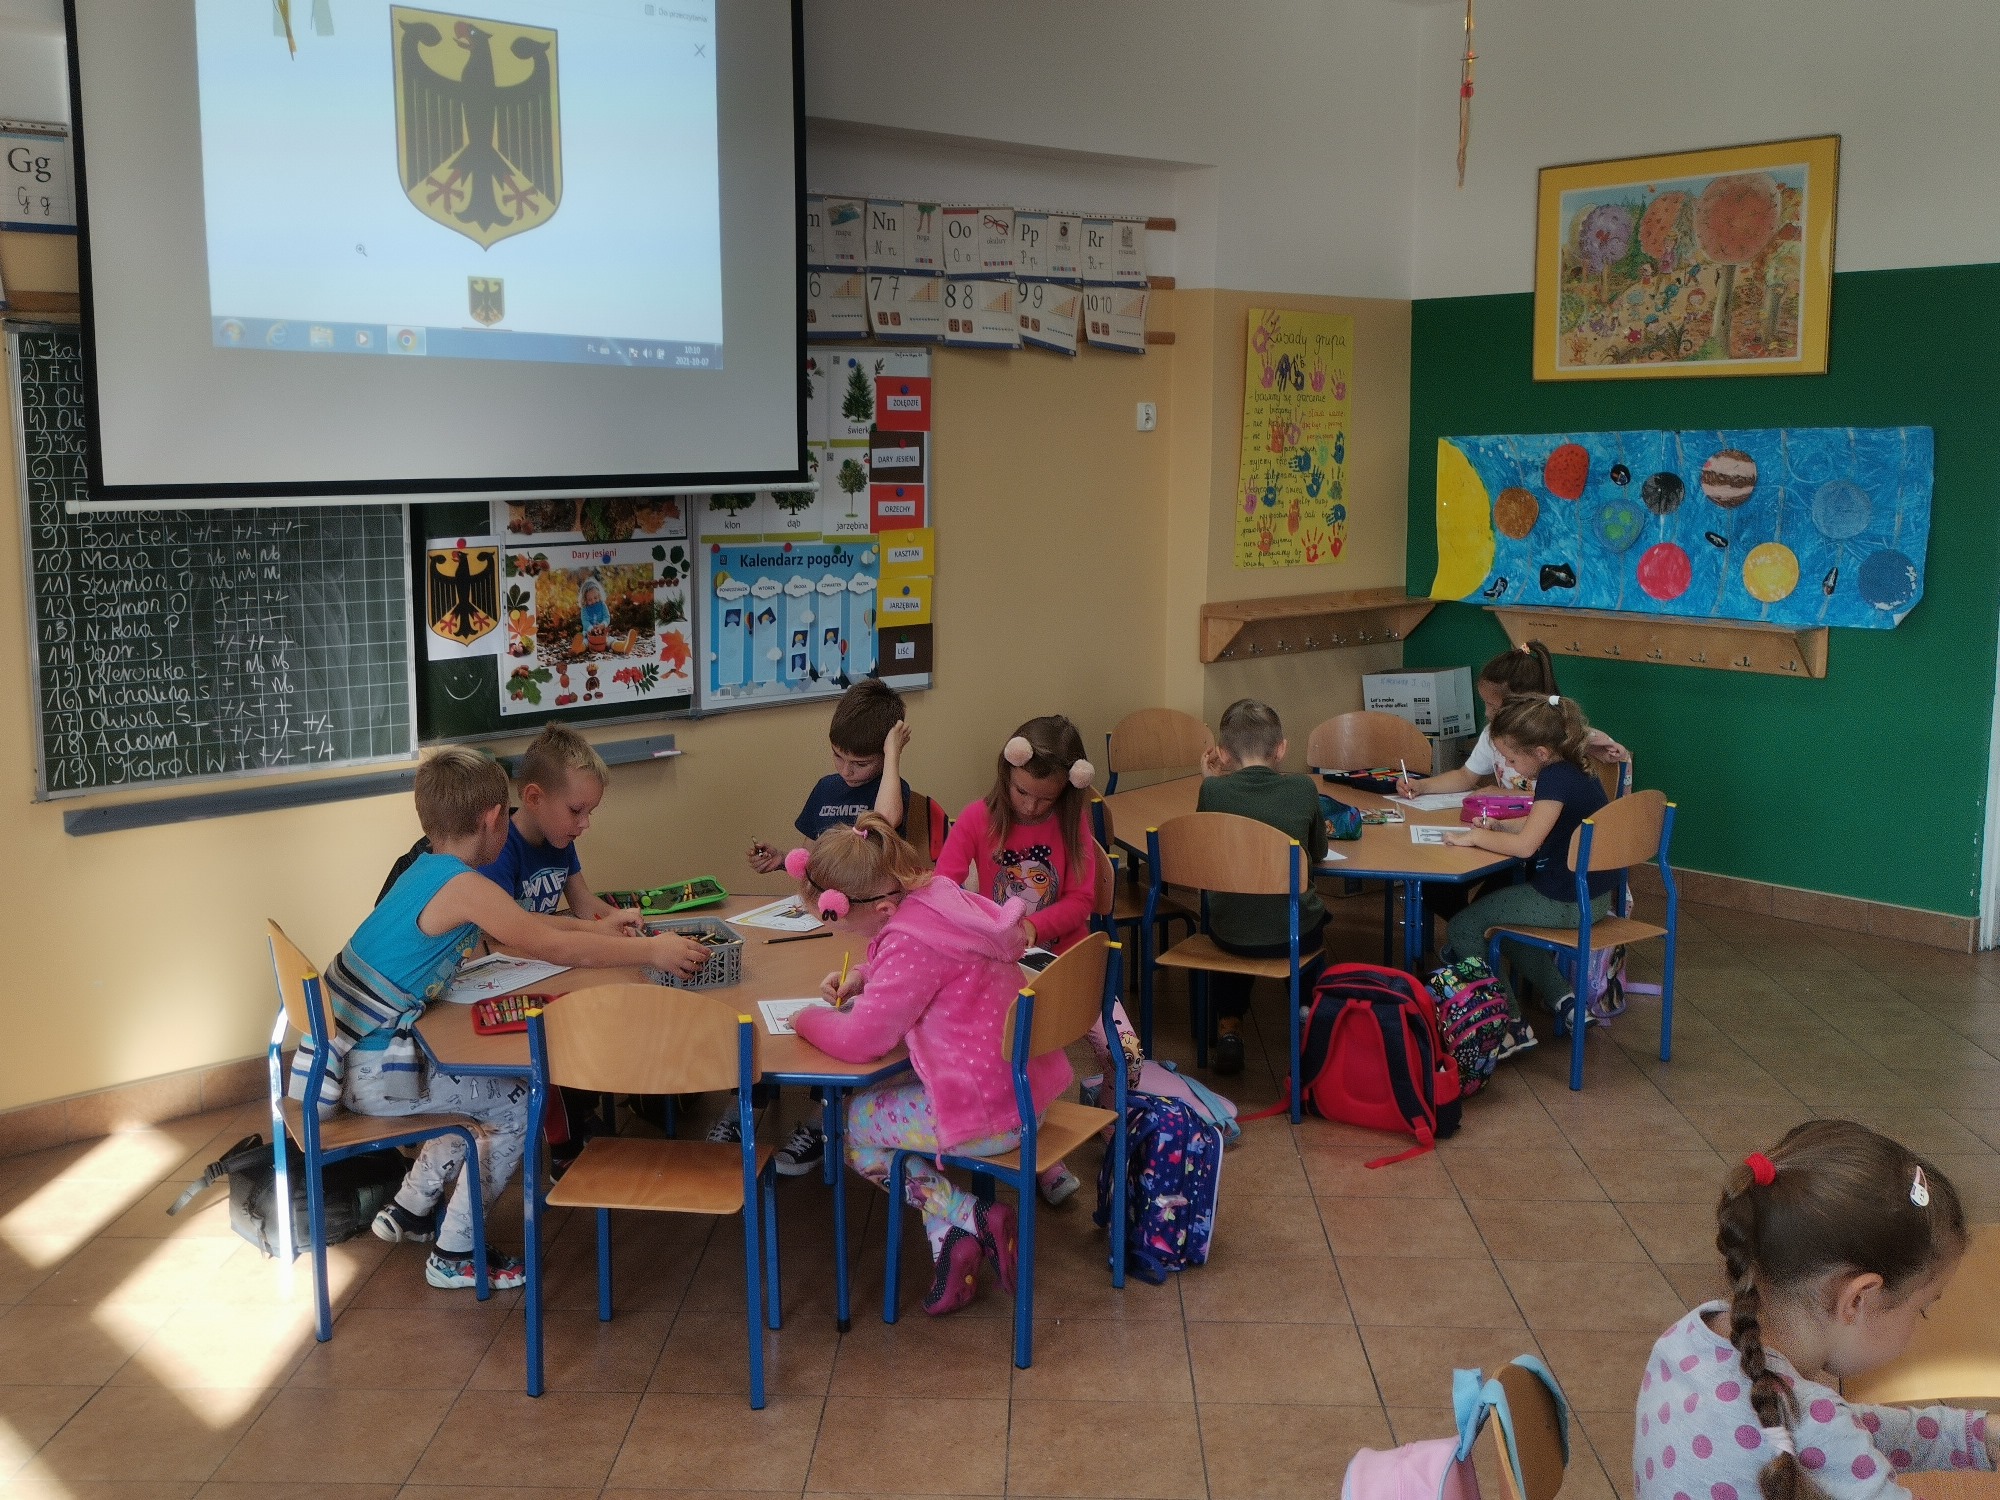 Dzieci siedzą w grupach przy stolikach. Na ekranie przy ścianie wyświetlane jest godło czarnego orła na żółtym tle